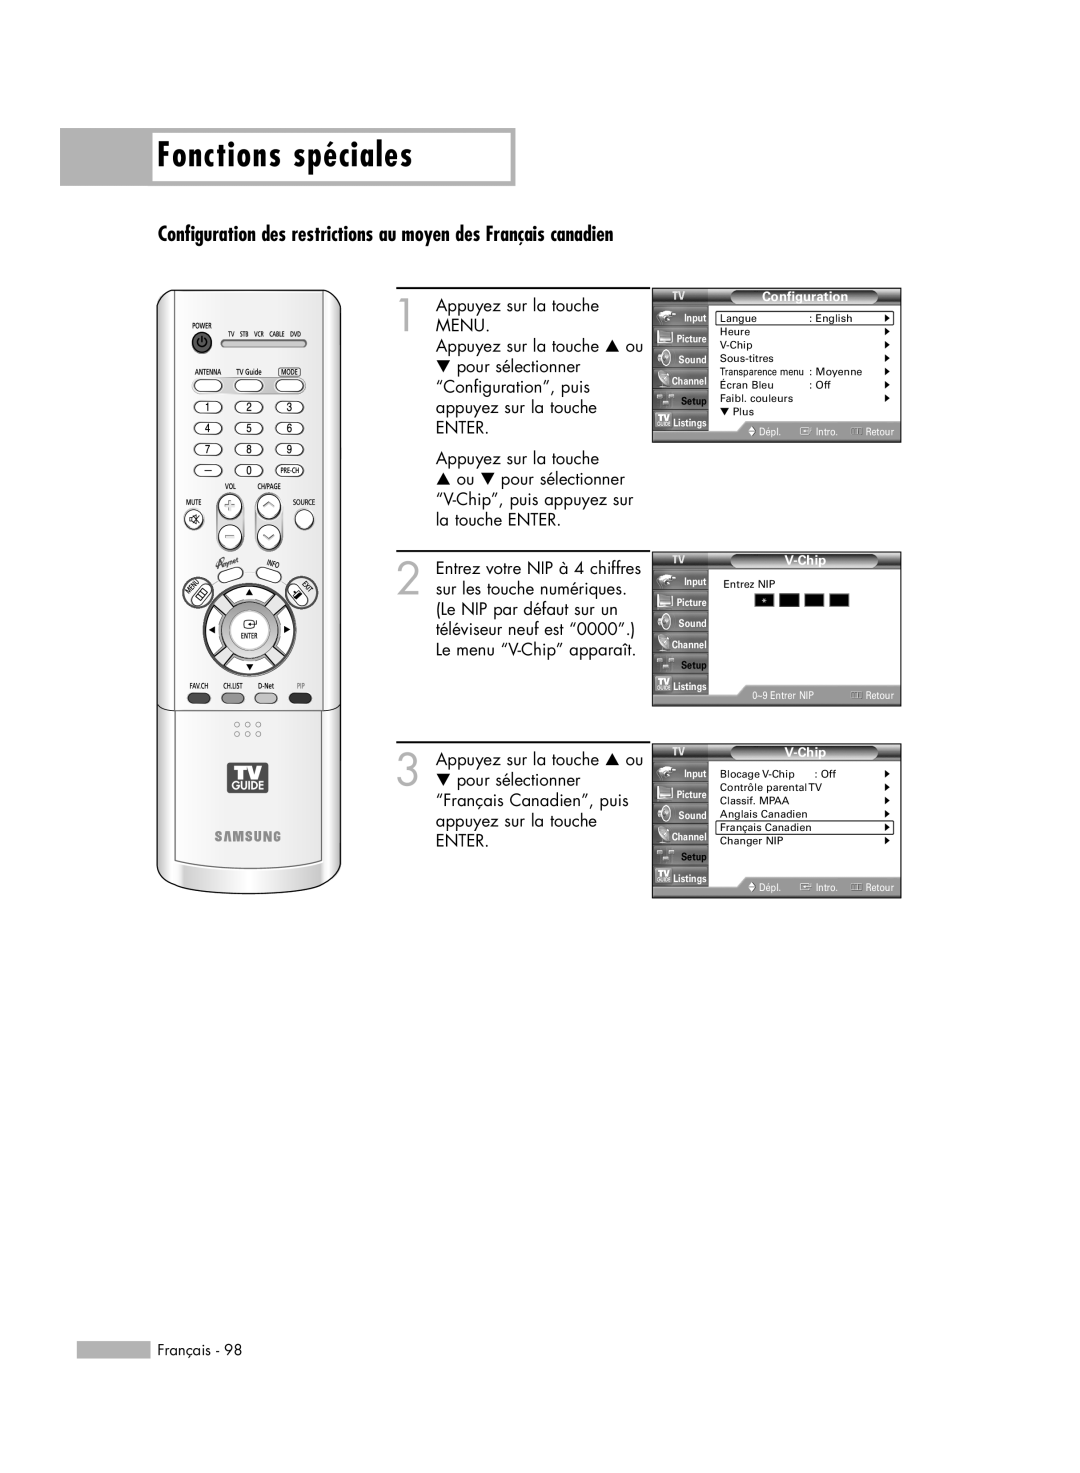 Samsung HL-R5678W Fonctions spéciales, † pour sélectionner “Français Canadien”, puis appuyez sur la touche, Configuration 